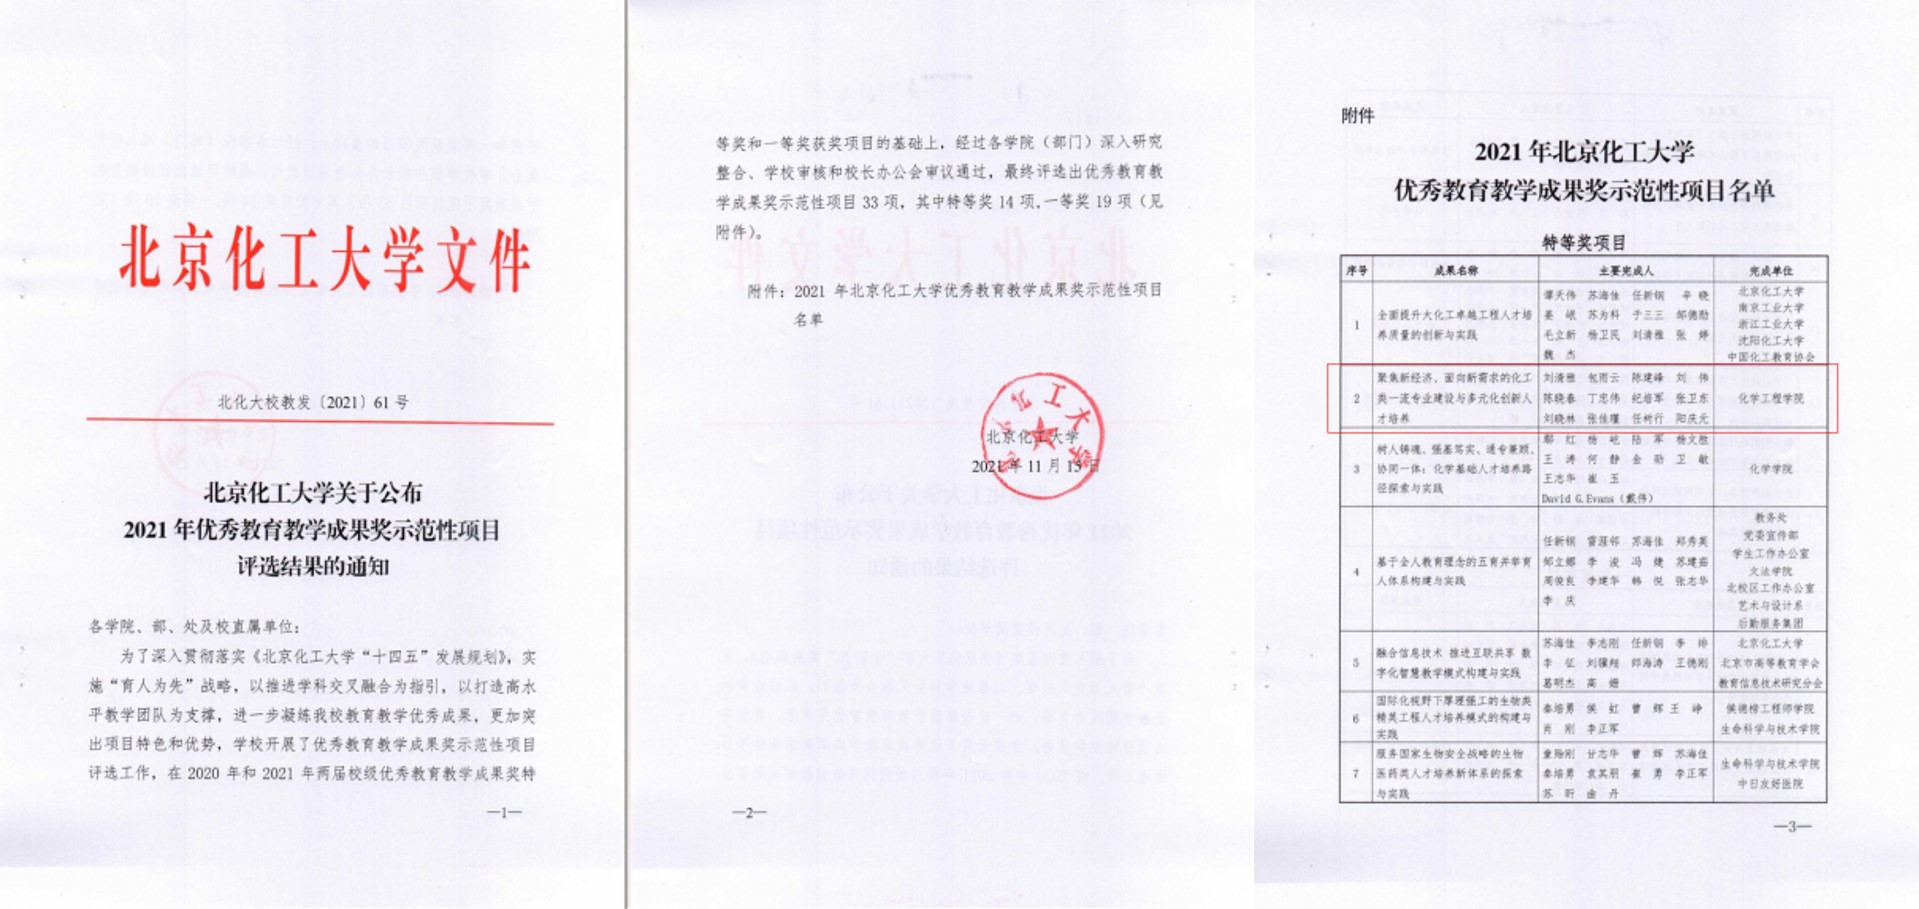 北京化工大学优秀教育教学成果评选结果（2021年）